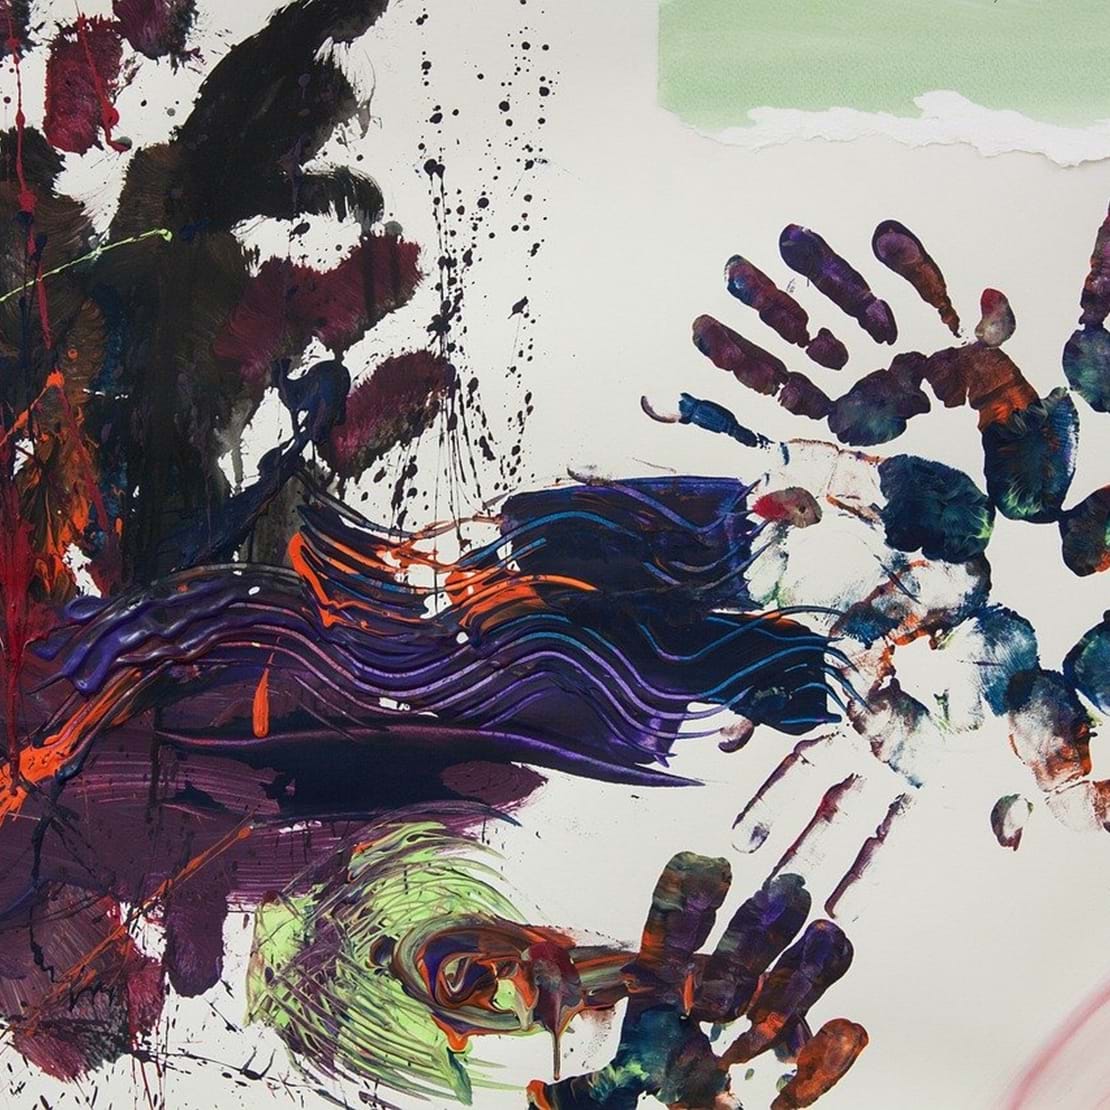 Abstrakt maleri i stærke farver med aftryk af hænder ude i højre side.